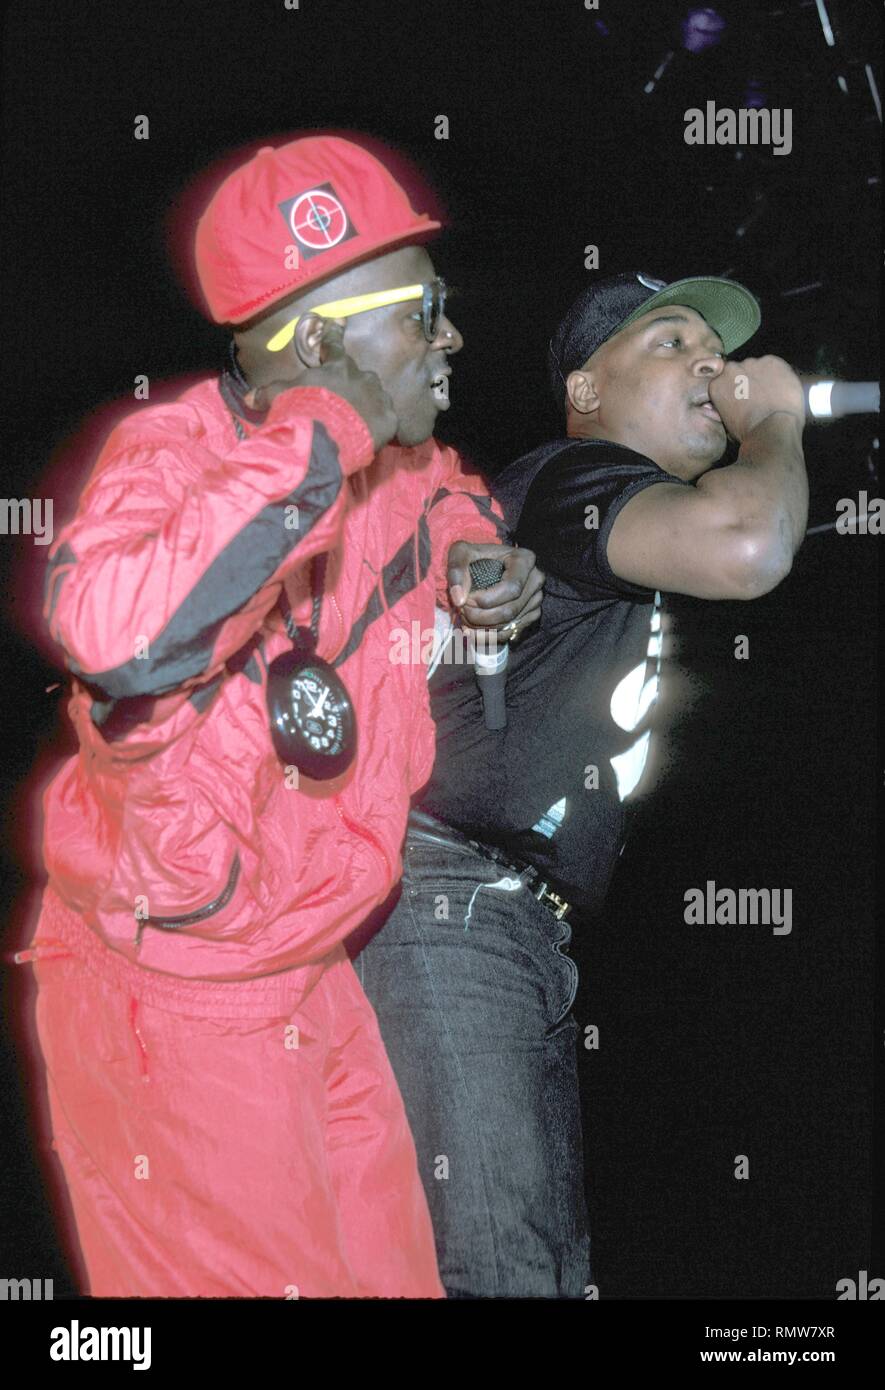 Sapore di rapper Fav e Chuck D influenti della musica hip hop gruppo nemico pubblico sono mostrati esibirsi sul palco durante un 'live' aspetto di concerto. Foto Stock